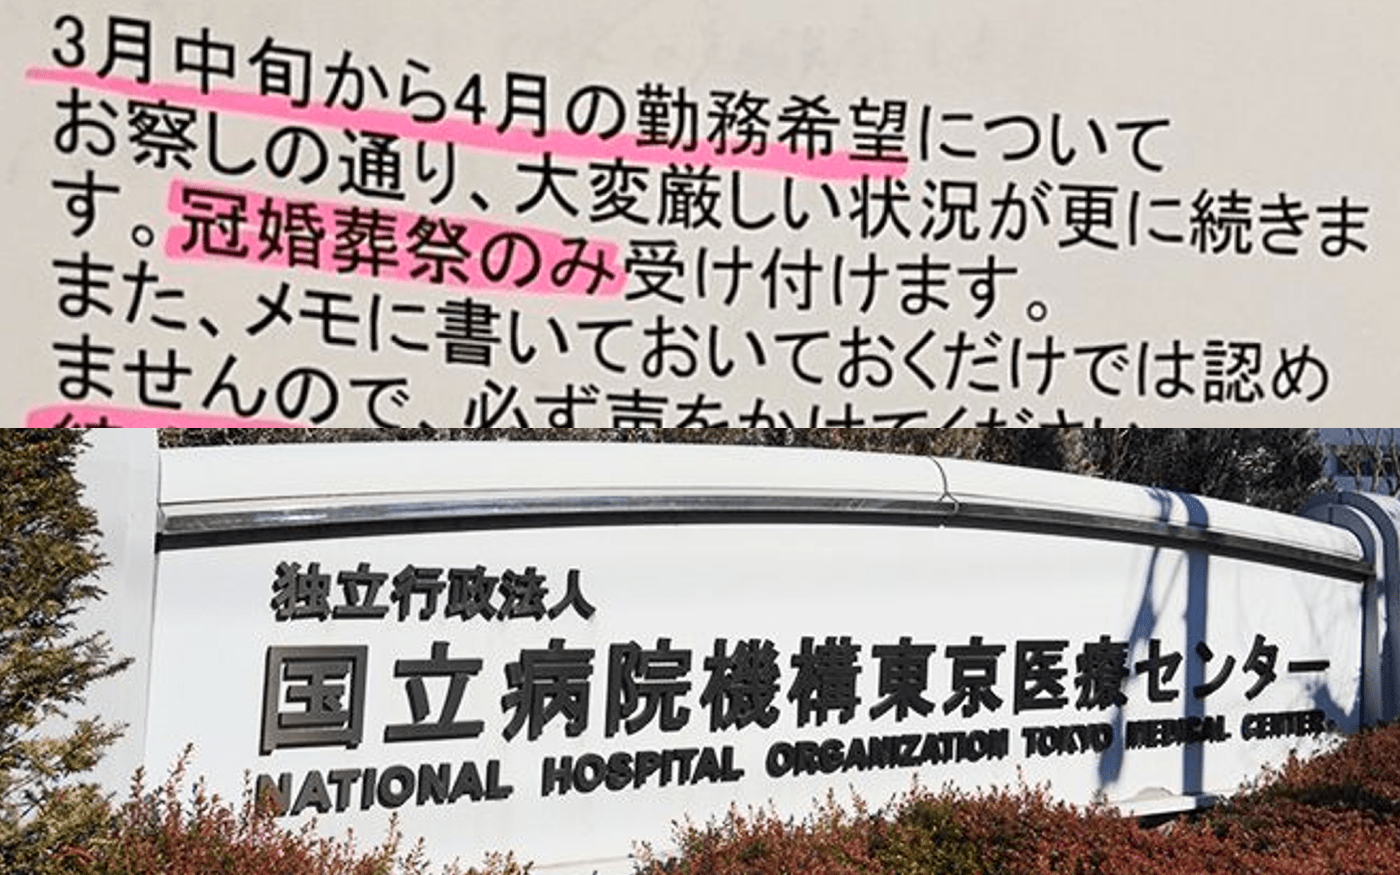 妊婦も夜勤、年休・育休NG、大量退職…全国140の国立病院で横行するブラック労働を看護師36人が告白